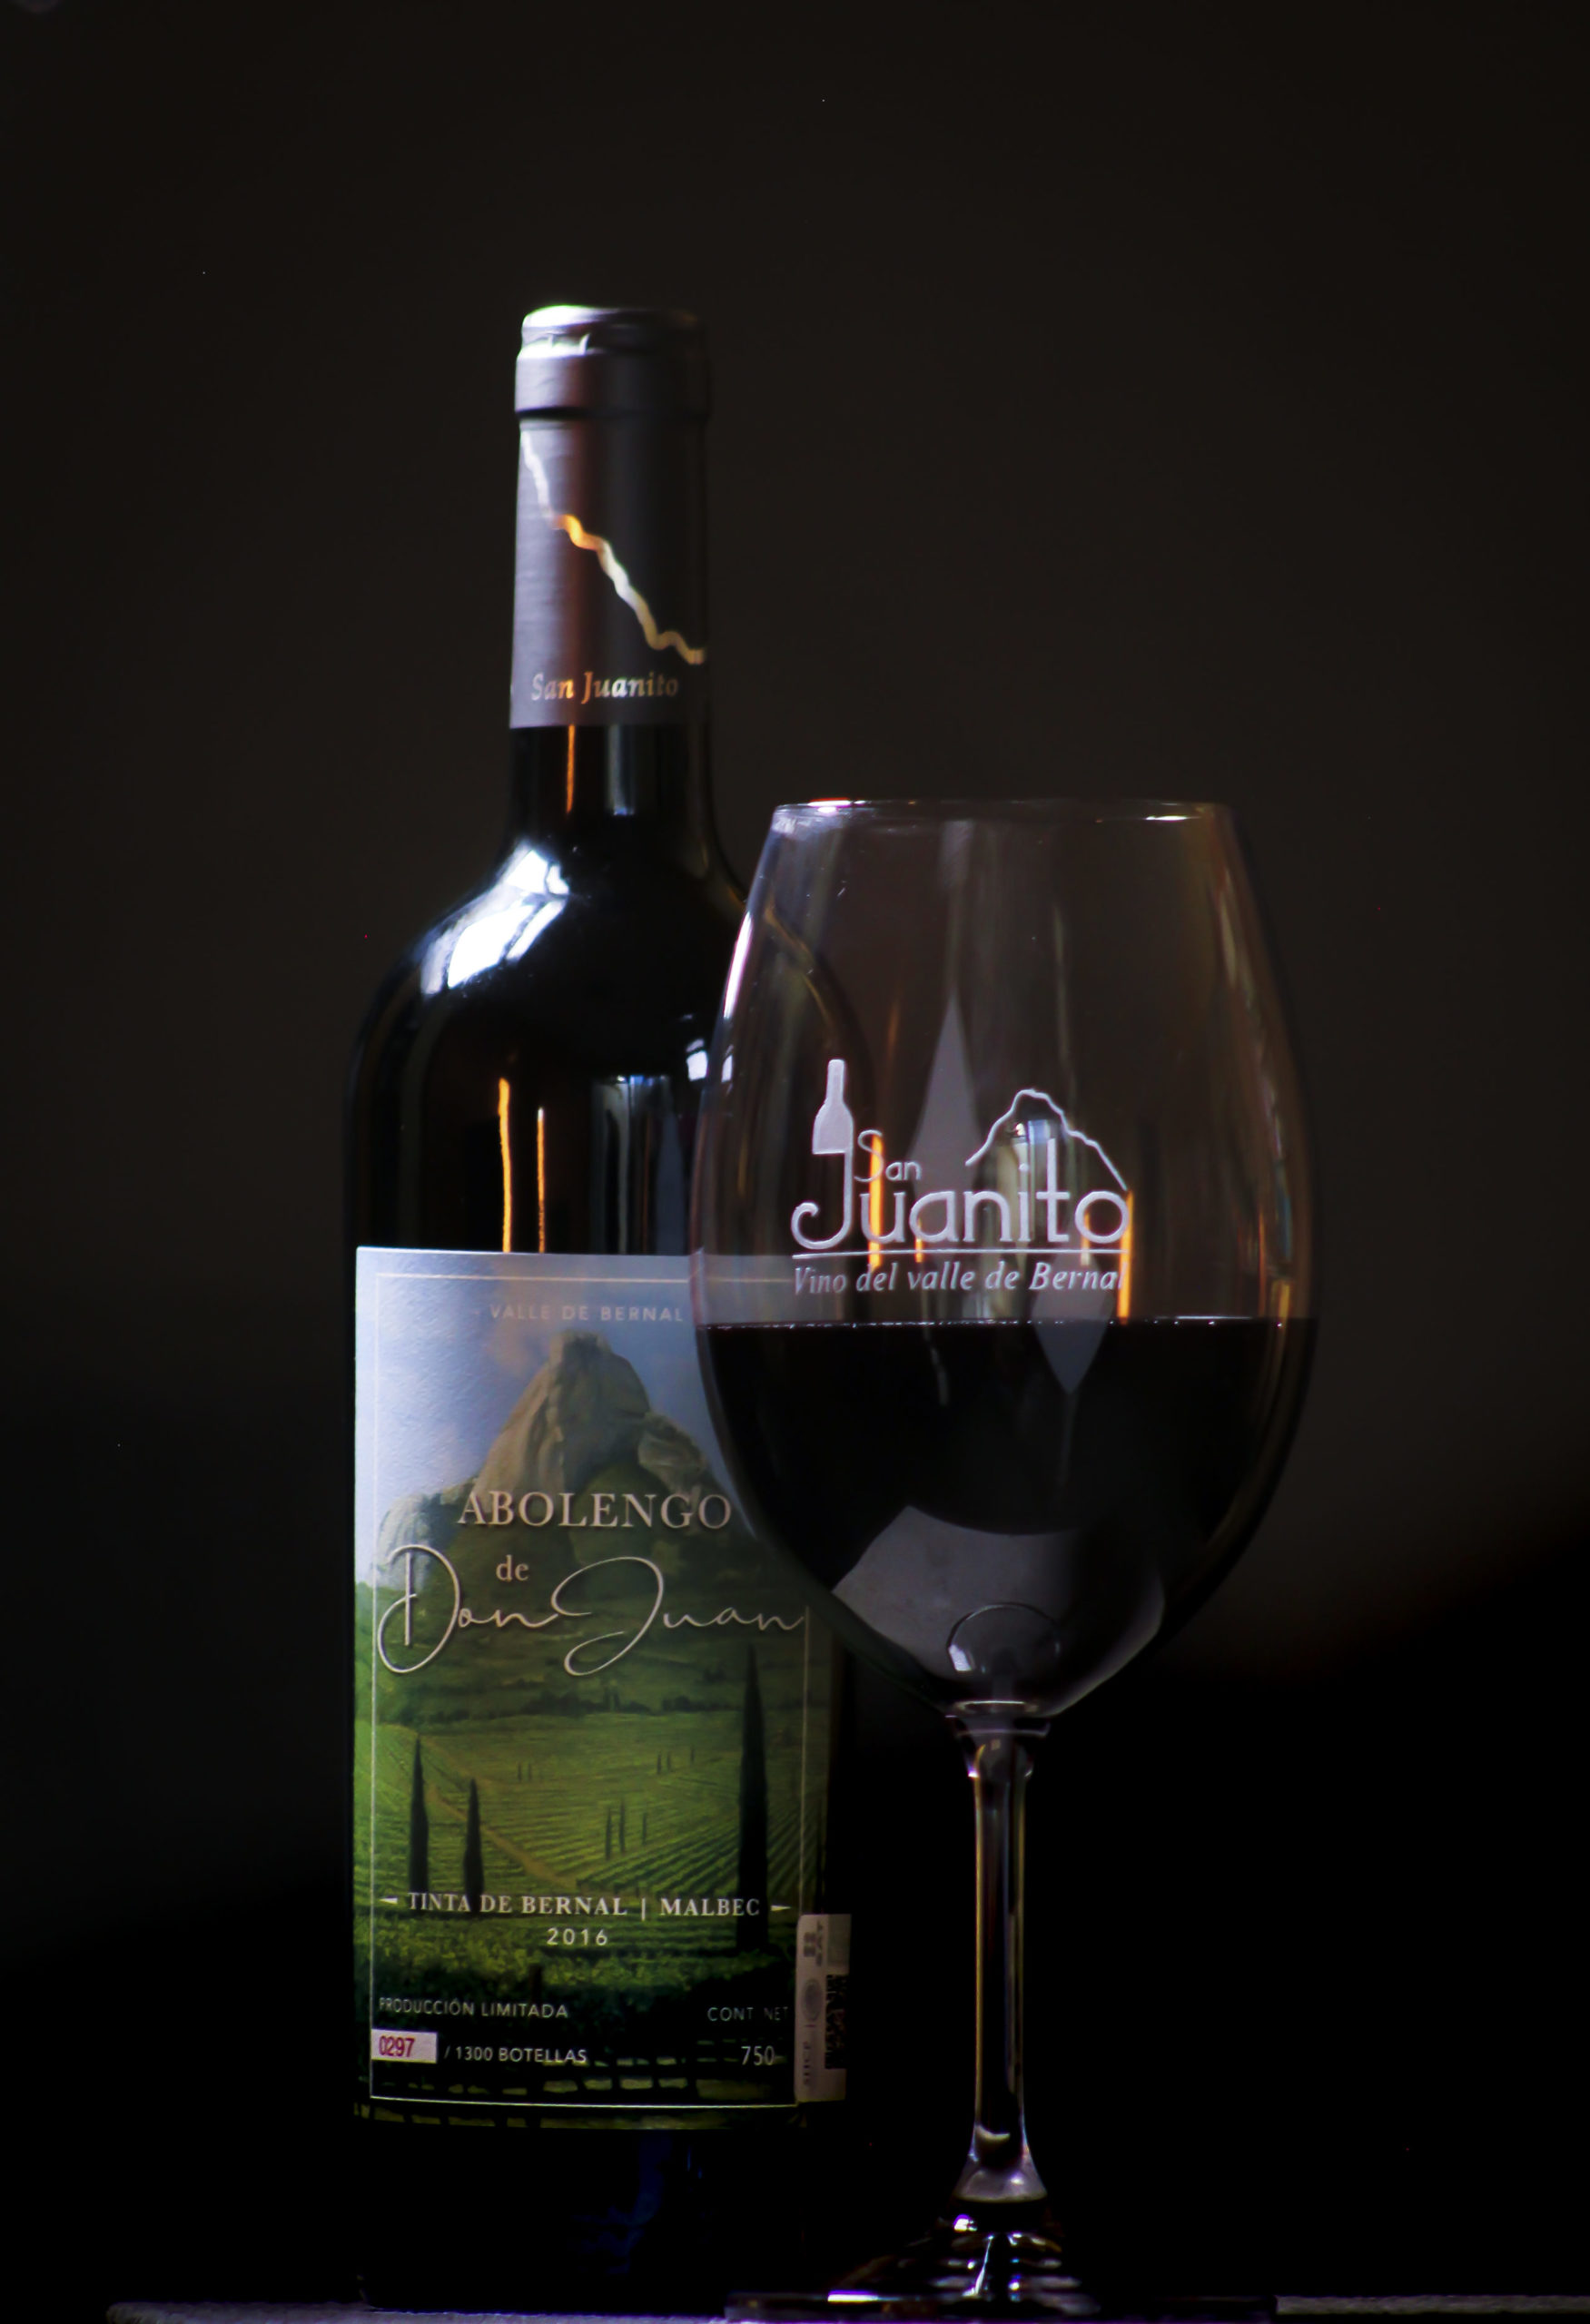 Abolengo de don Juan – Vino tinto, tinta de Bernal 75%, Malbec 25% 750 ml.